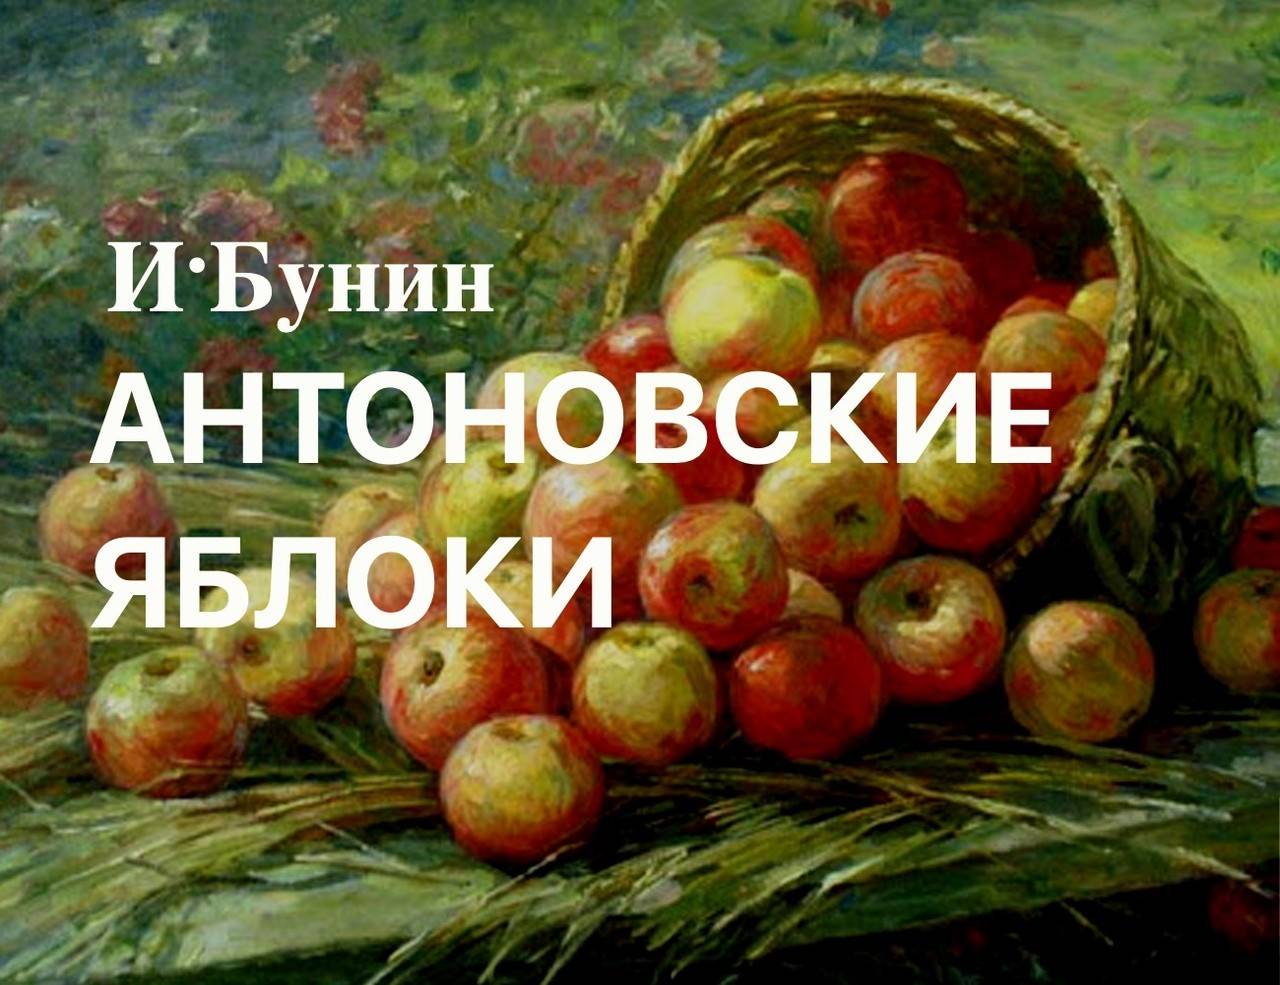 Антоновские яблоки (бунин) — читать онлайн